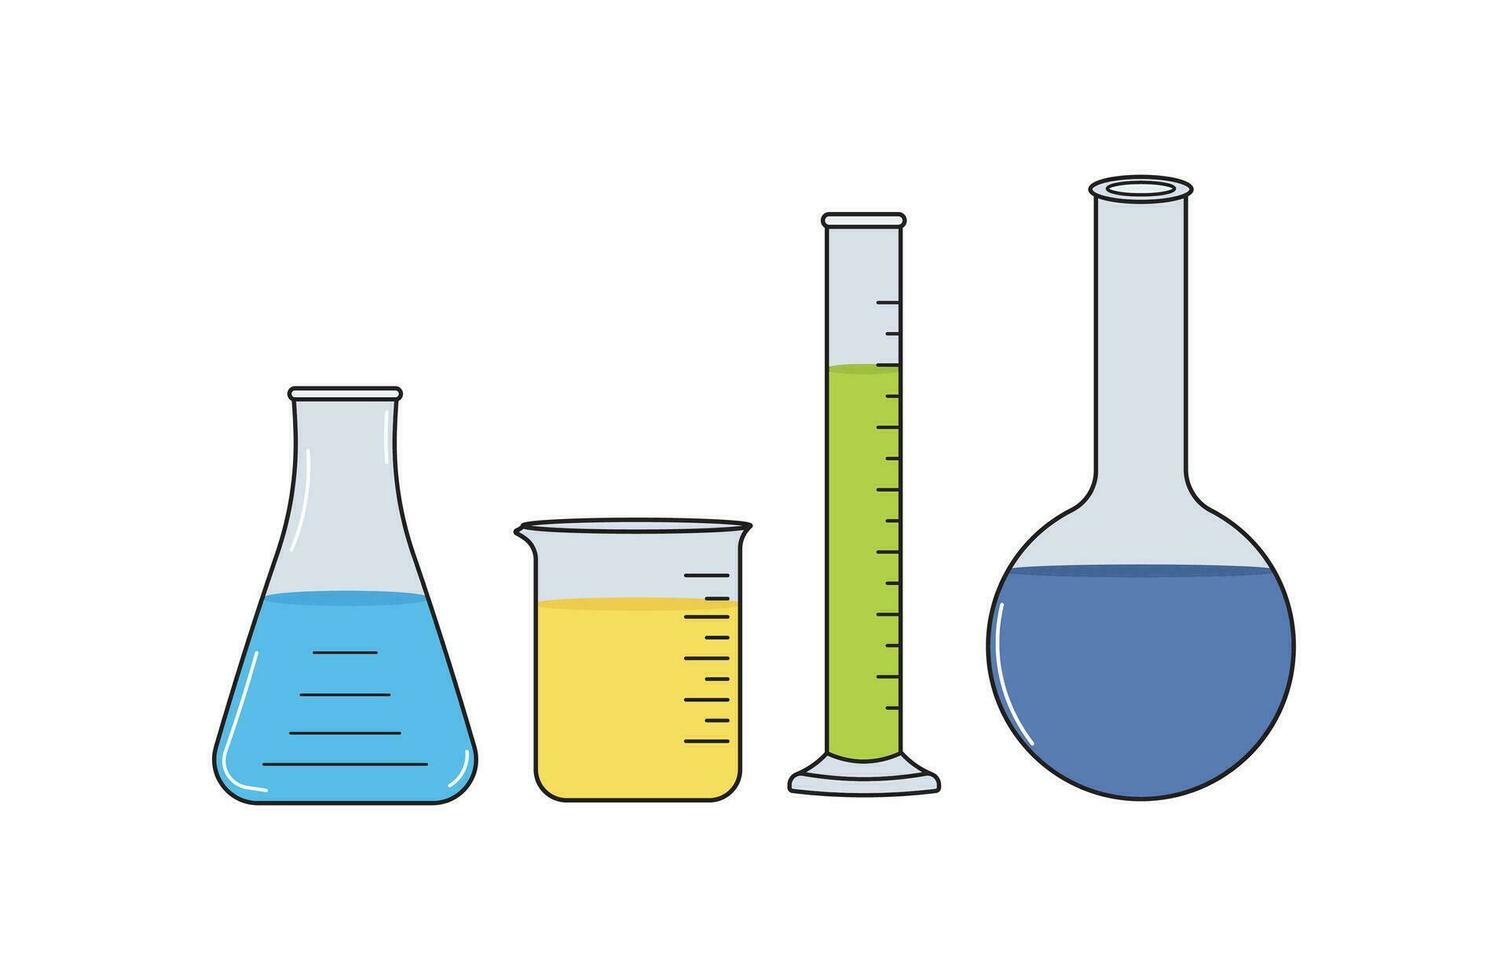 vektor illustration uppsättning av medicinsk kemisk glas, bägare glas,erlenmayer flaska vetenskaplig i klotter stil